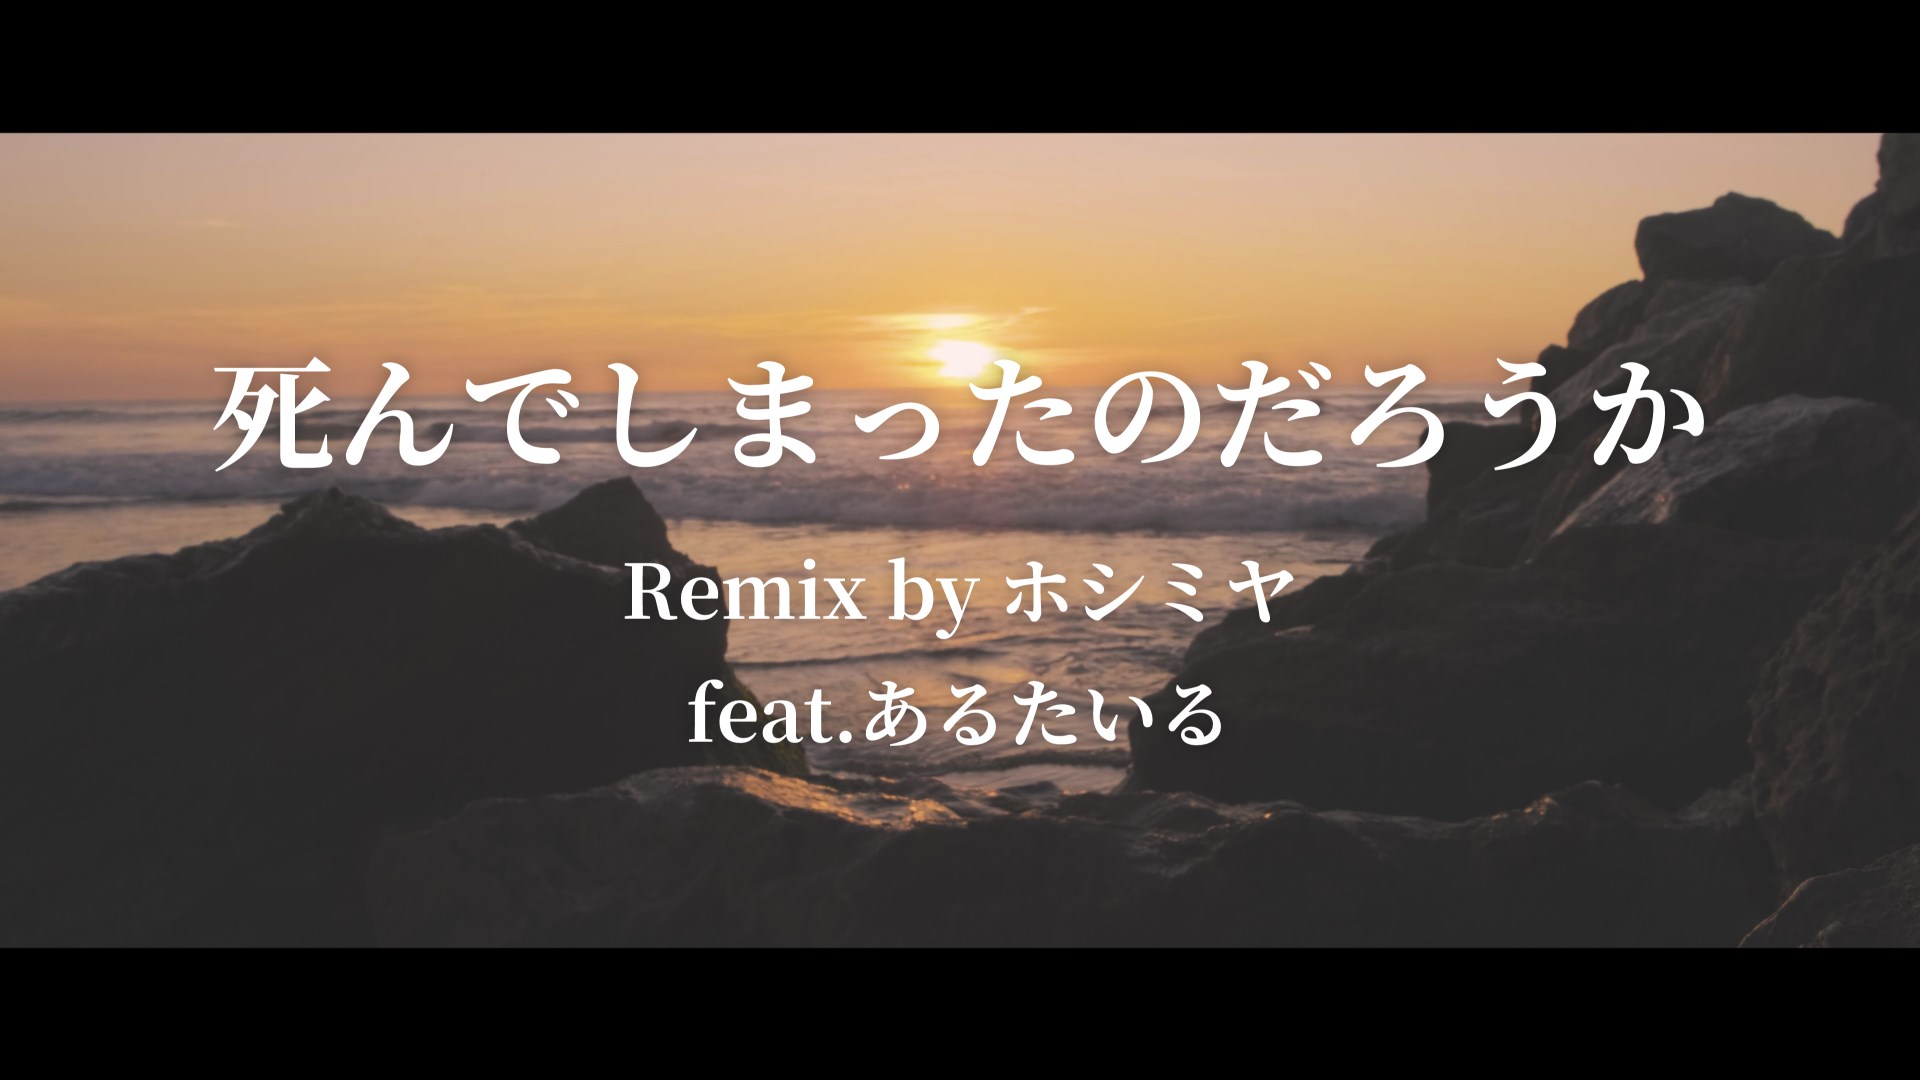 死んでしまったのだろうか / Remix by ホシミヤ feat.あるたいる